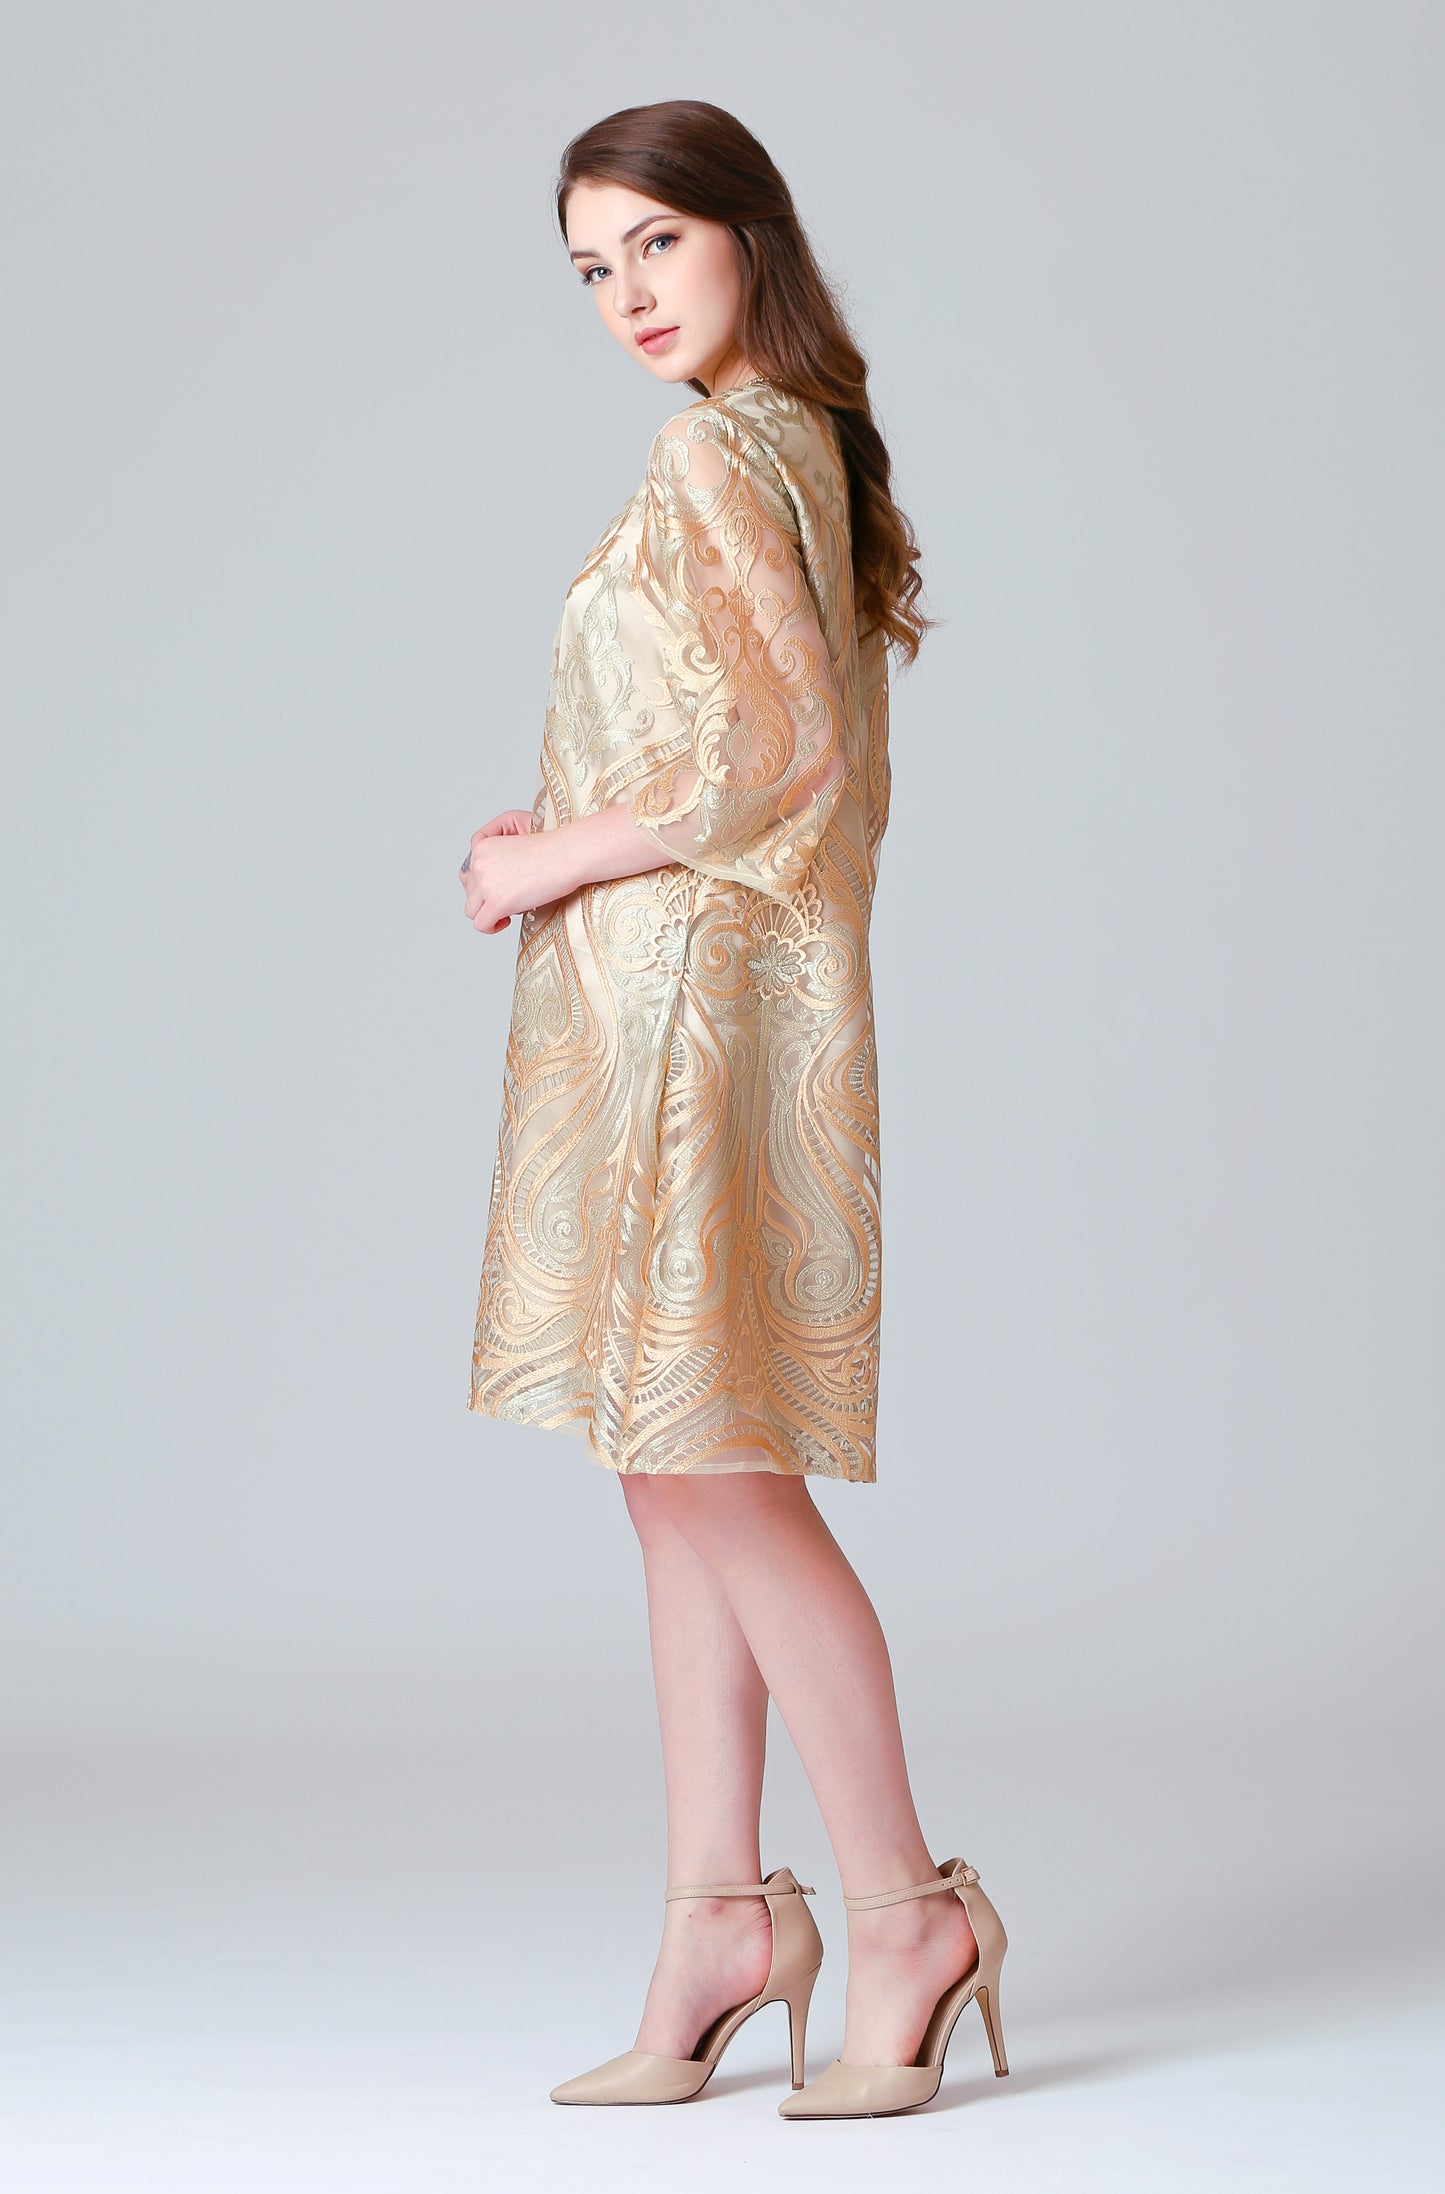 Fearless - Soft Gold Dress